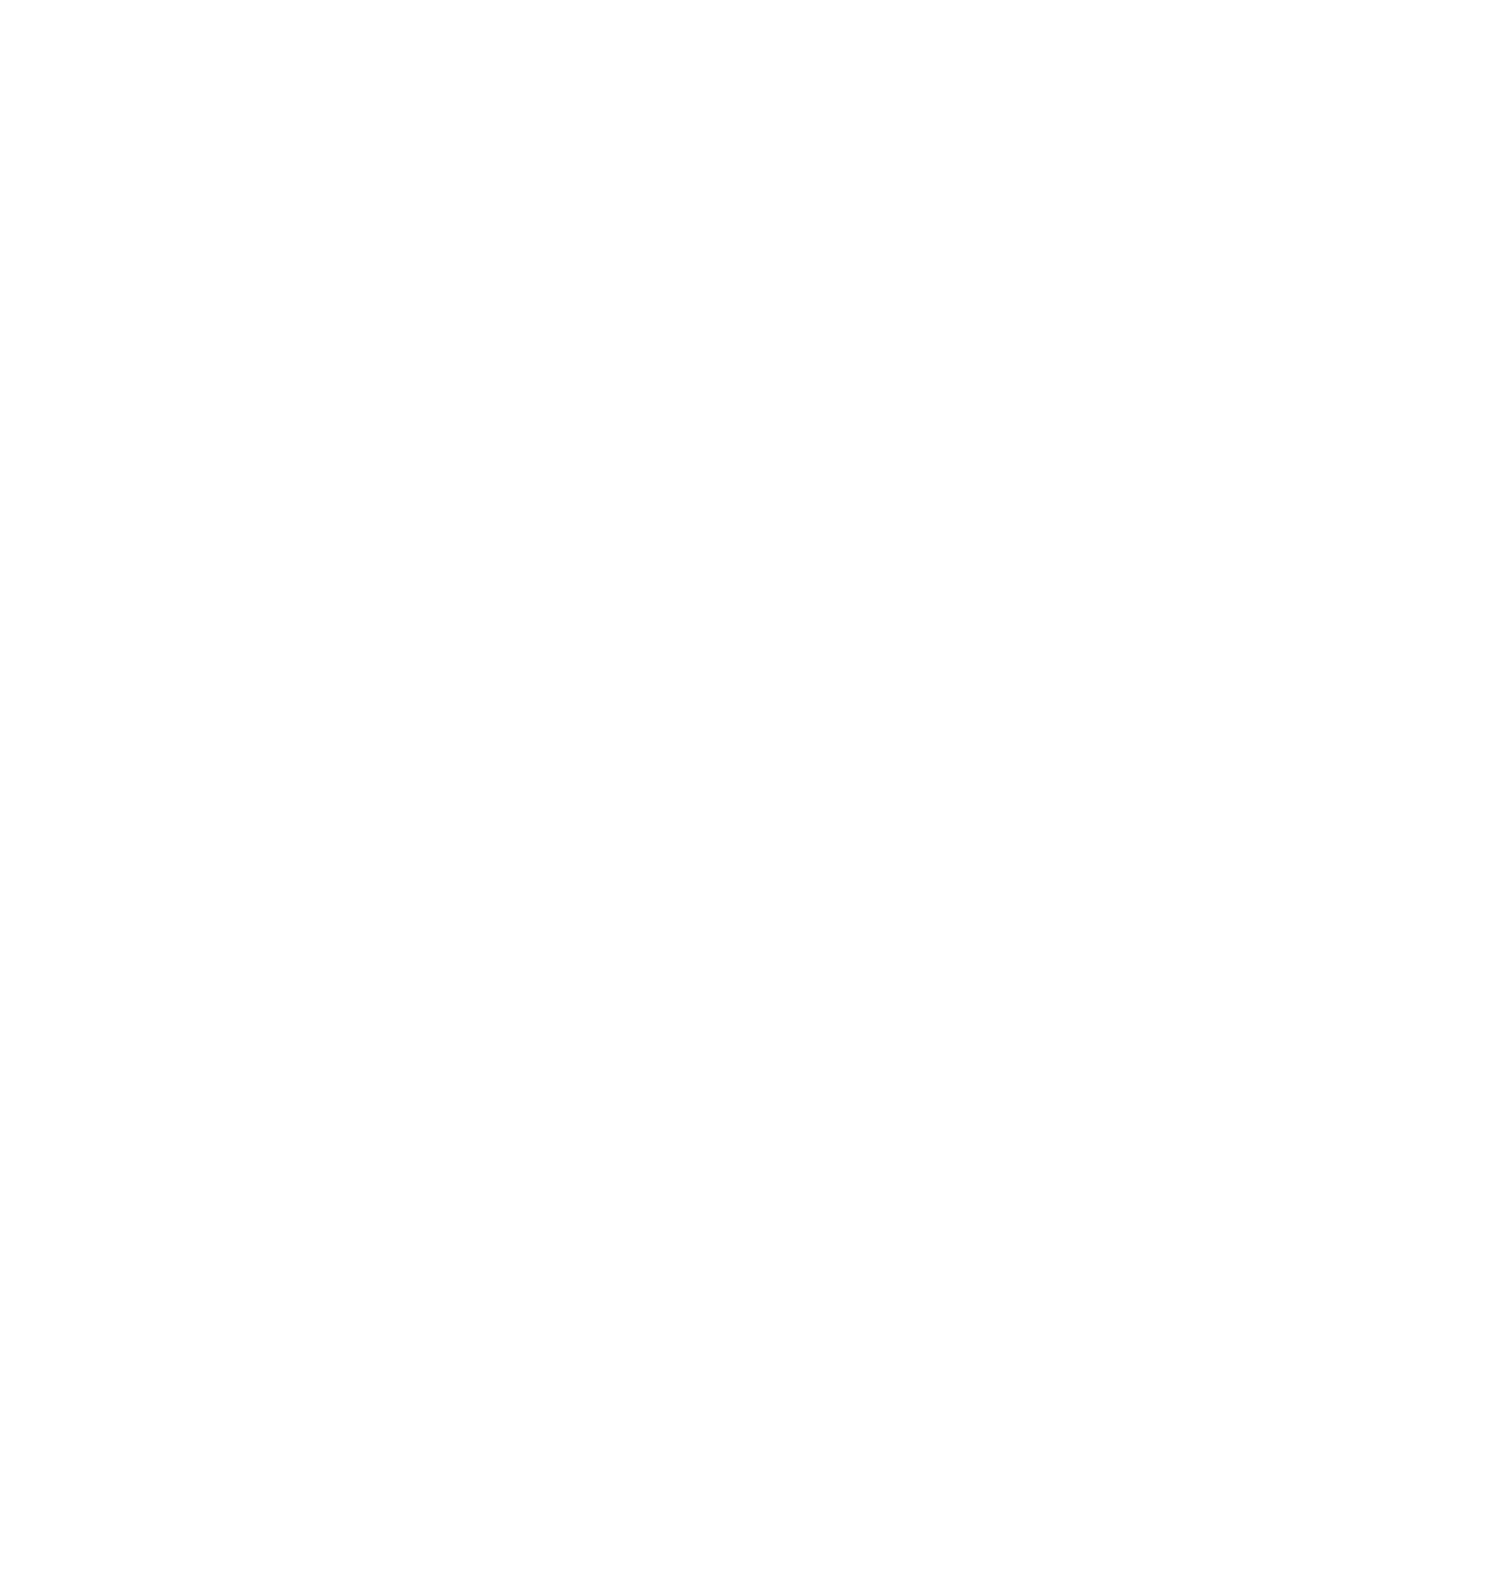 Akili logo pour fonds sombres (PNG transparent)